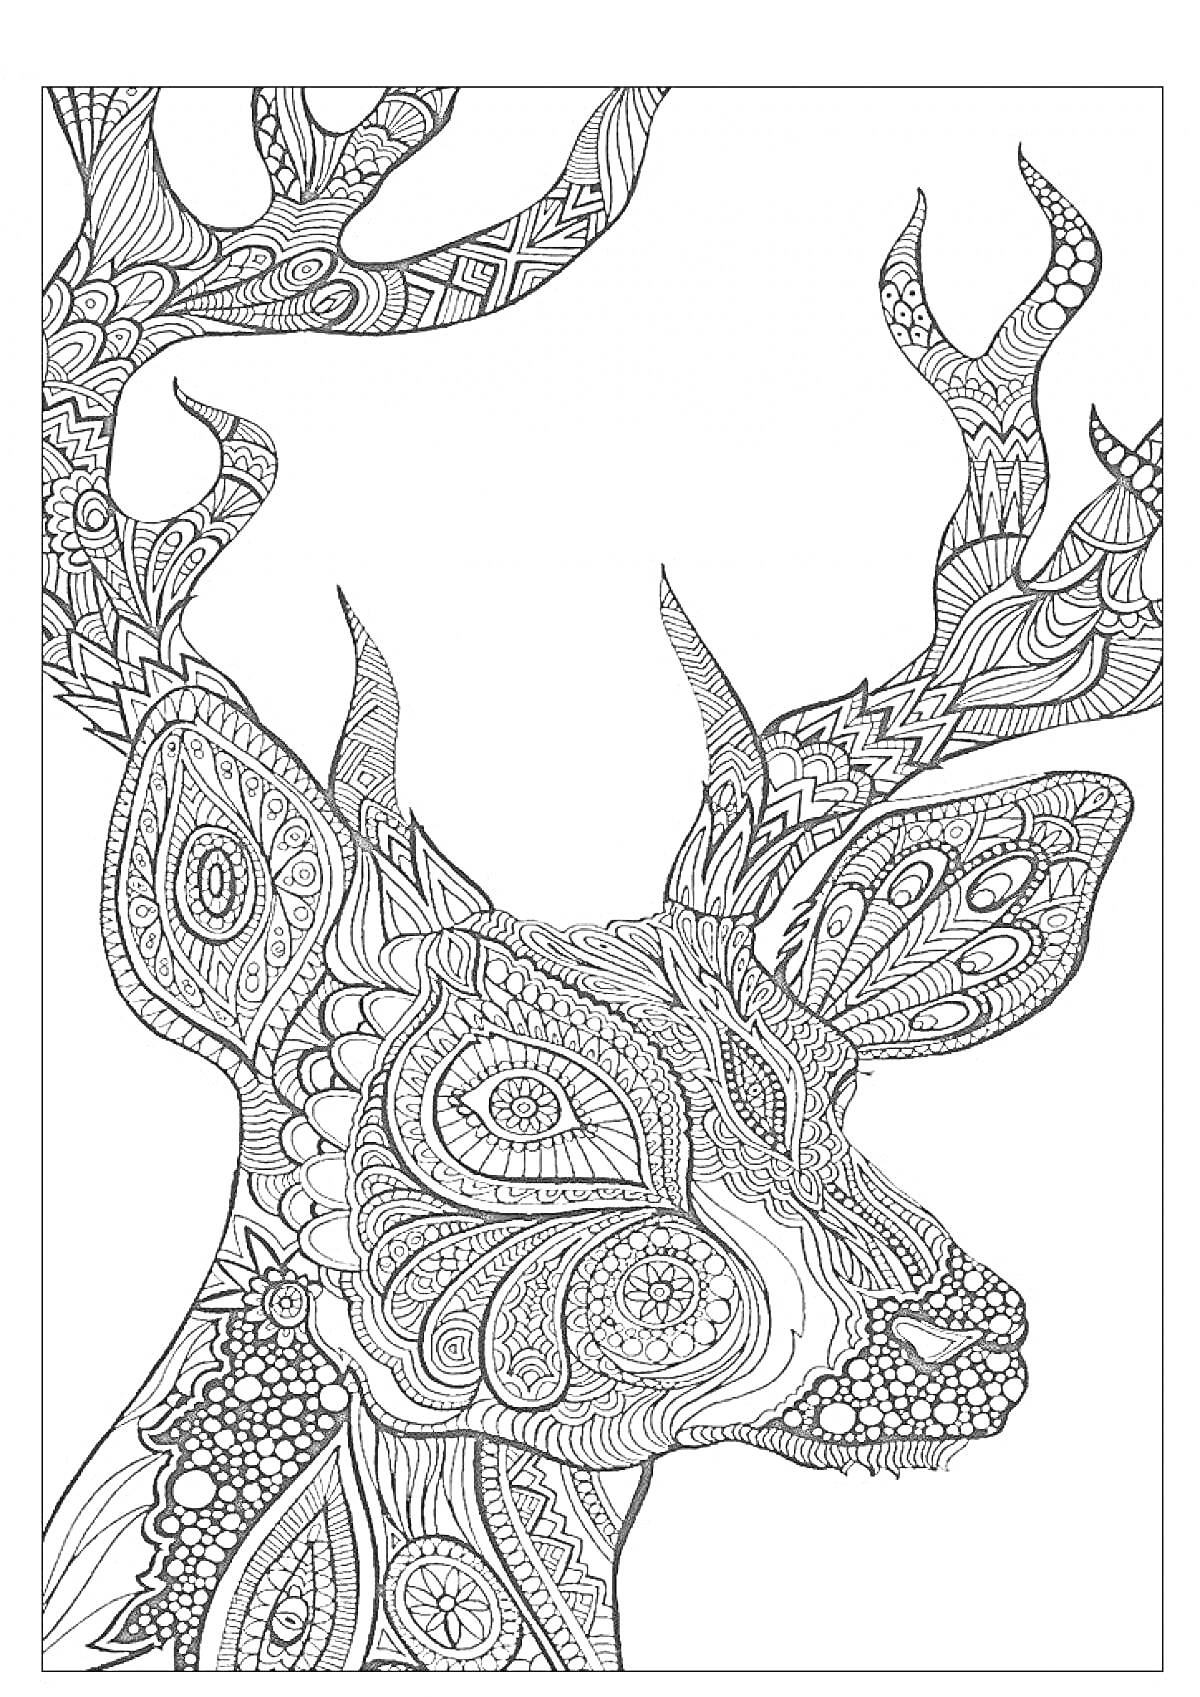 Раскраска Антистресс расцветка с оленем, детализация включает сложные узоры и орнаменты на рогах, голове и шее животного